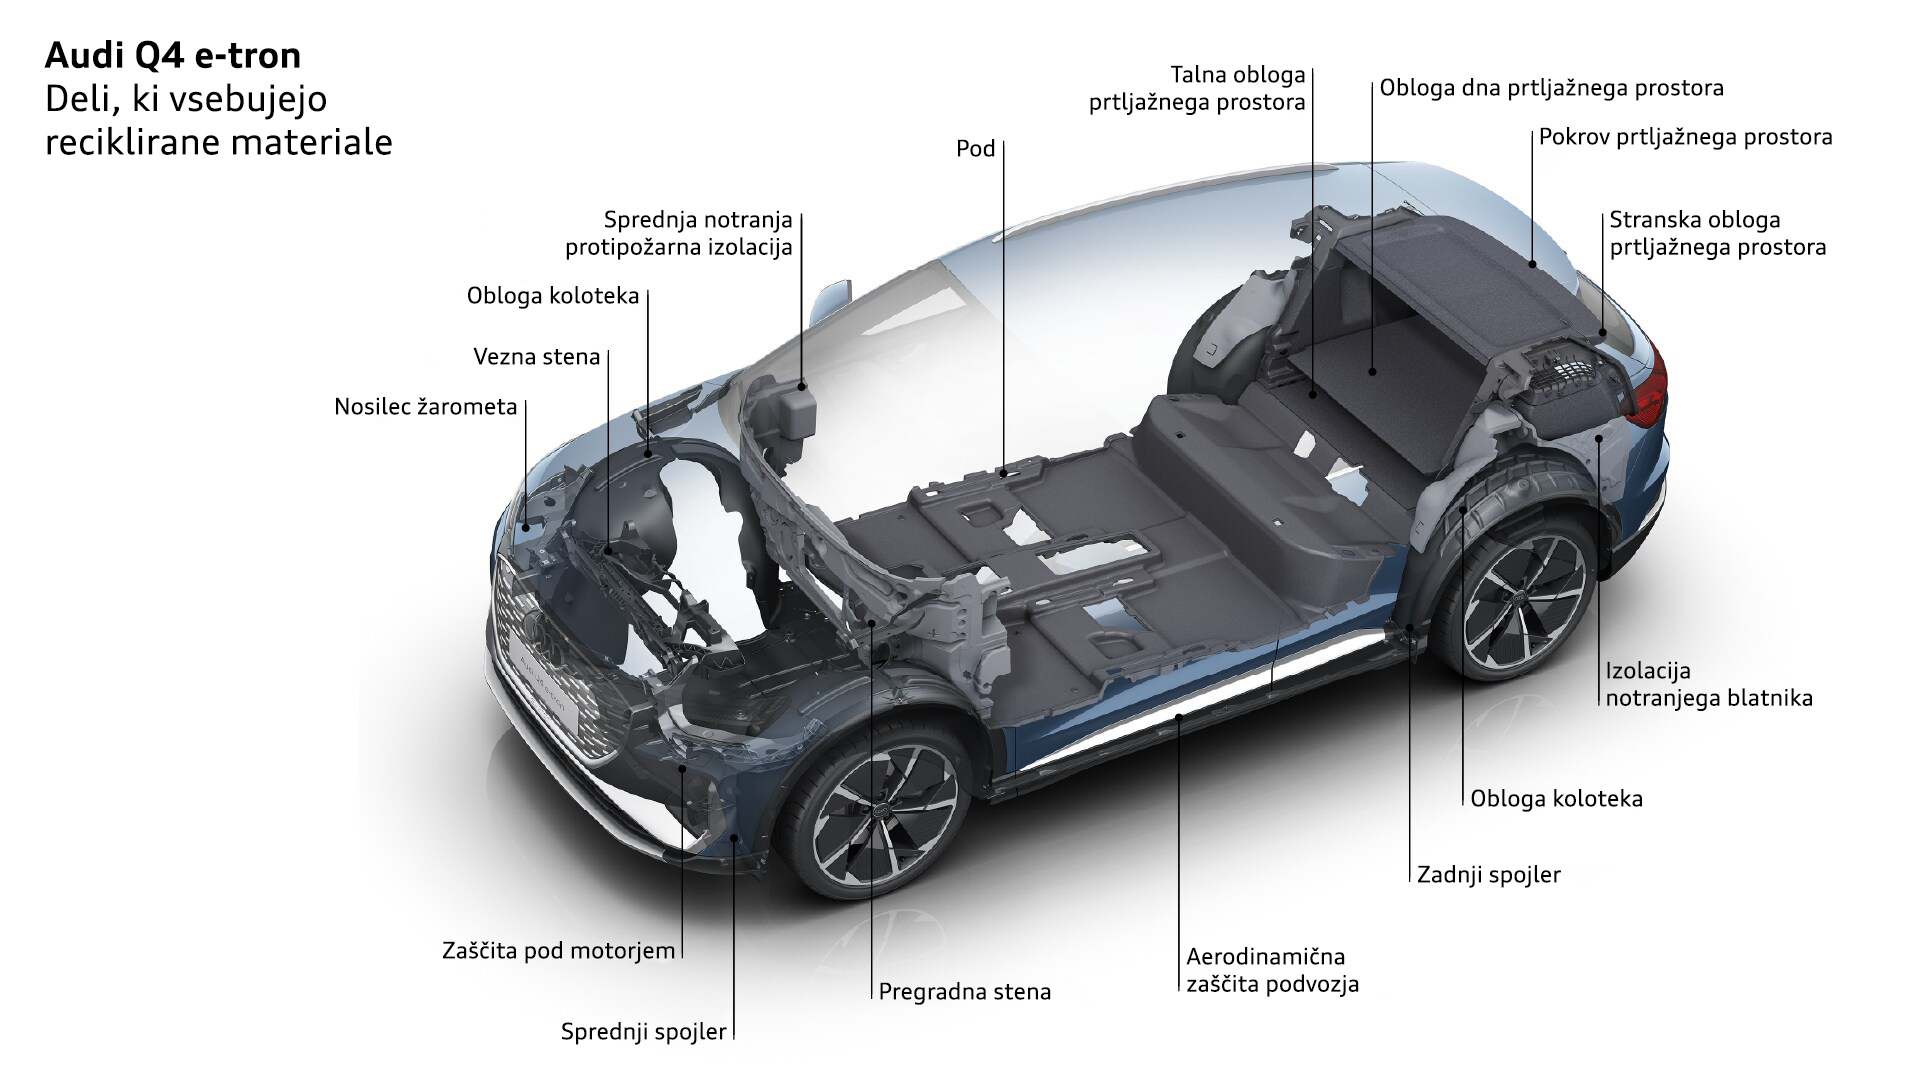 Električni Audi Q4 e-tron ima več kot 20 delov, ki vsebujejo delež recikliranega materiala.